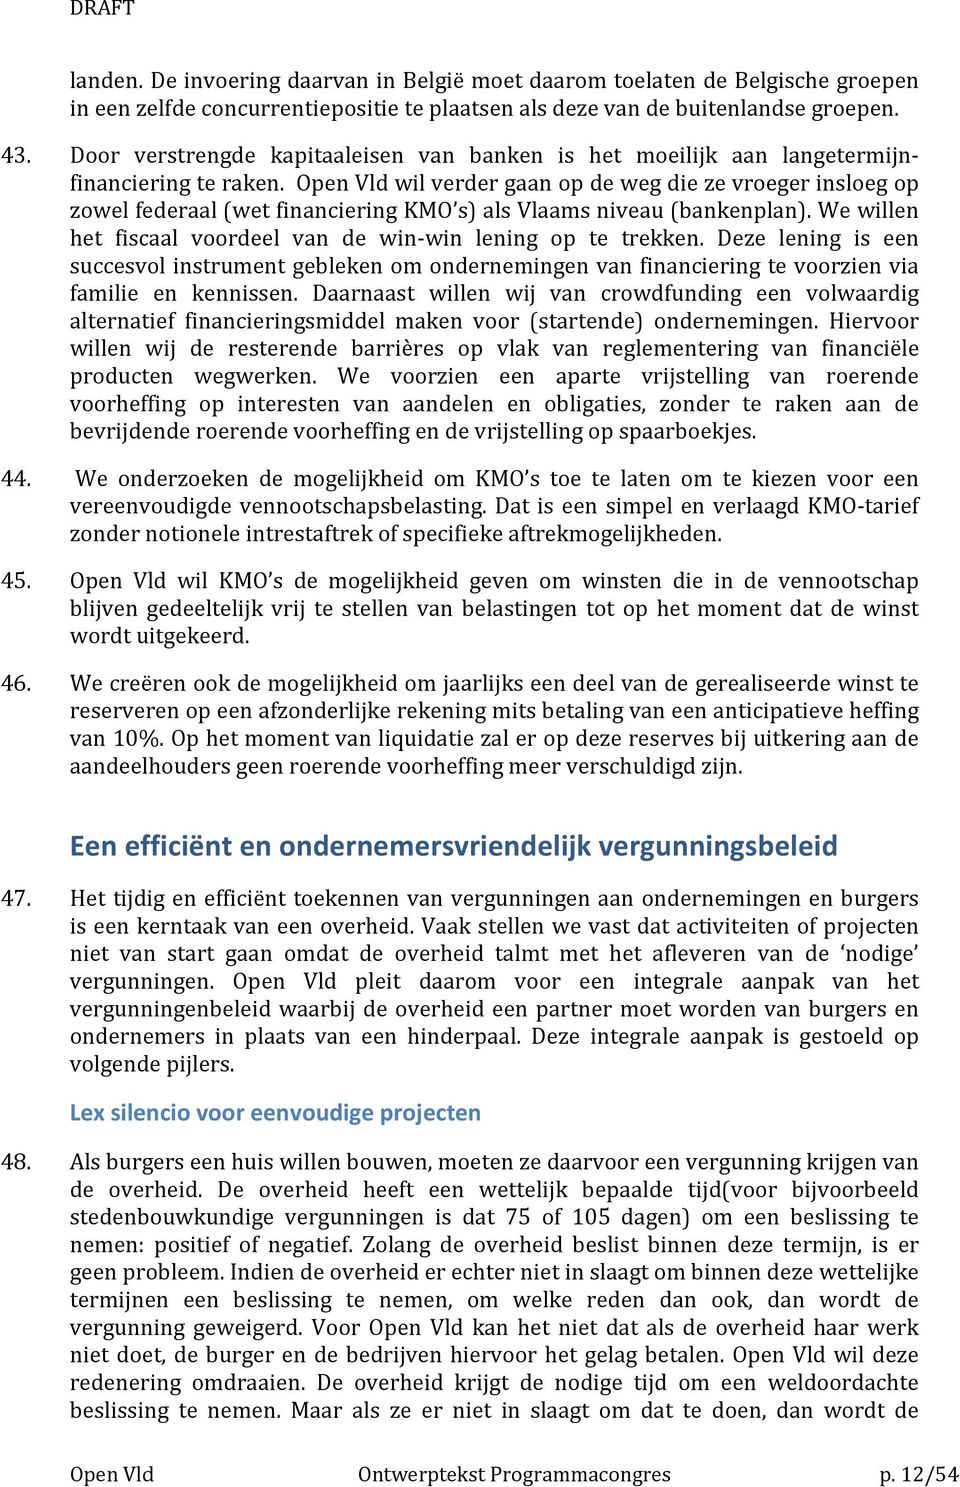 Open Vld wil verder gaan op de weg die ze vroeger insloeg op zowel federaal (wet financiering KMO s) als Vlaams niveau (bankenplan). We willen het fiscaal voordeel van de win-win lening op te trekken.